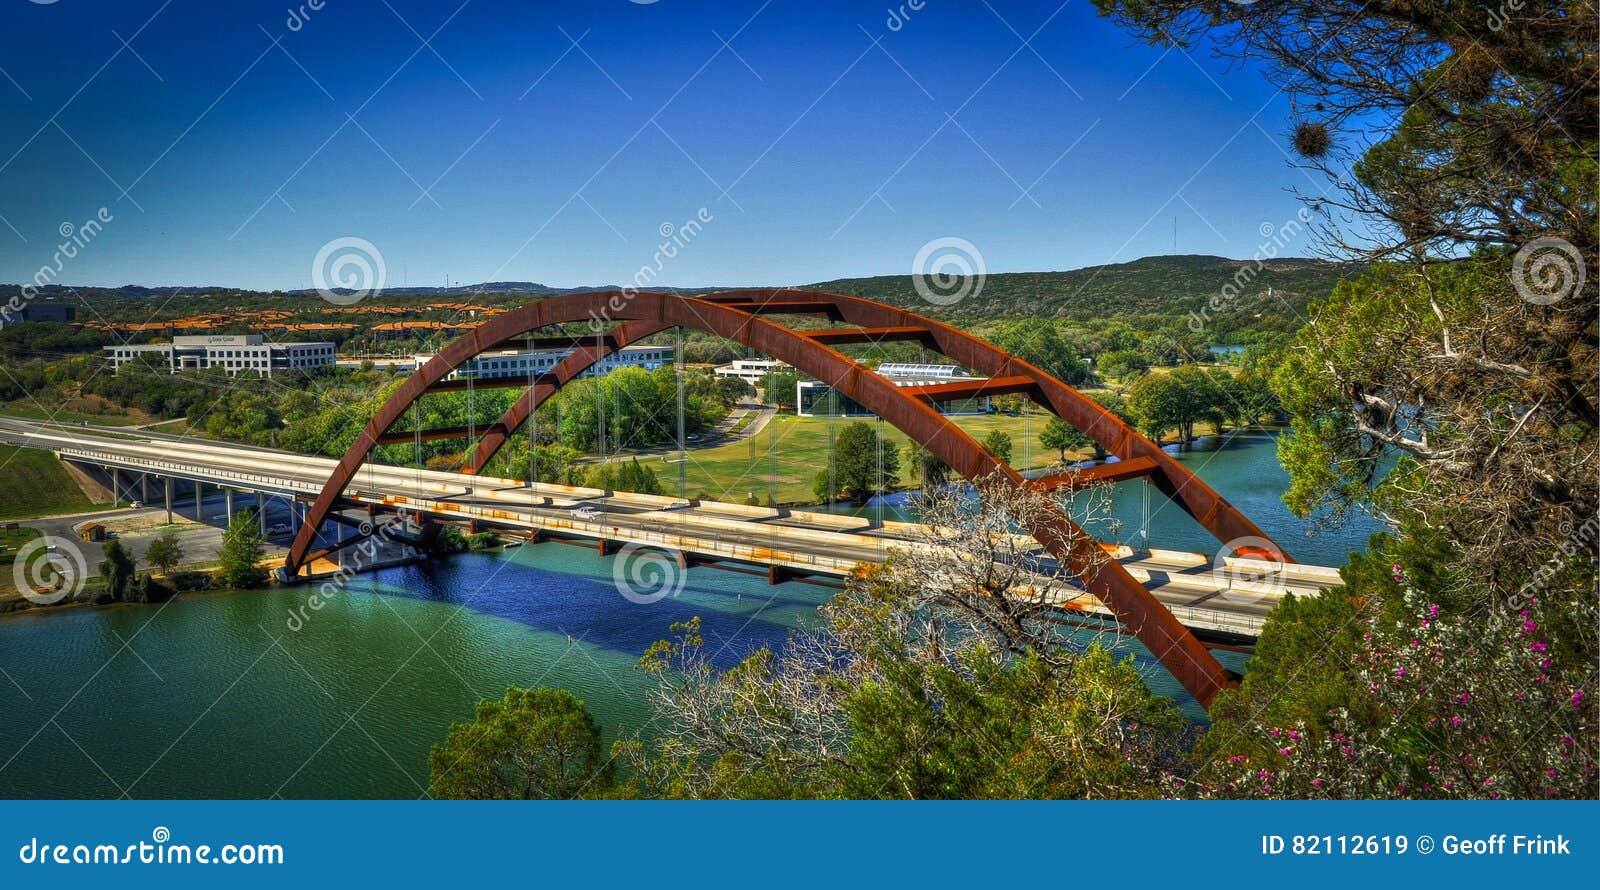 pennypecker bridge, austin, texas